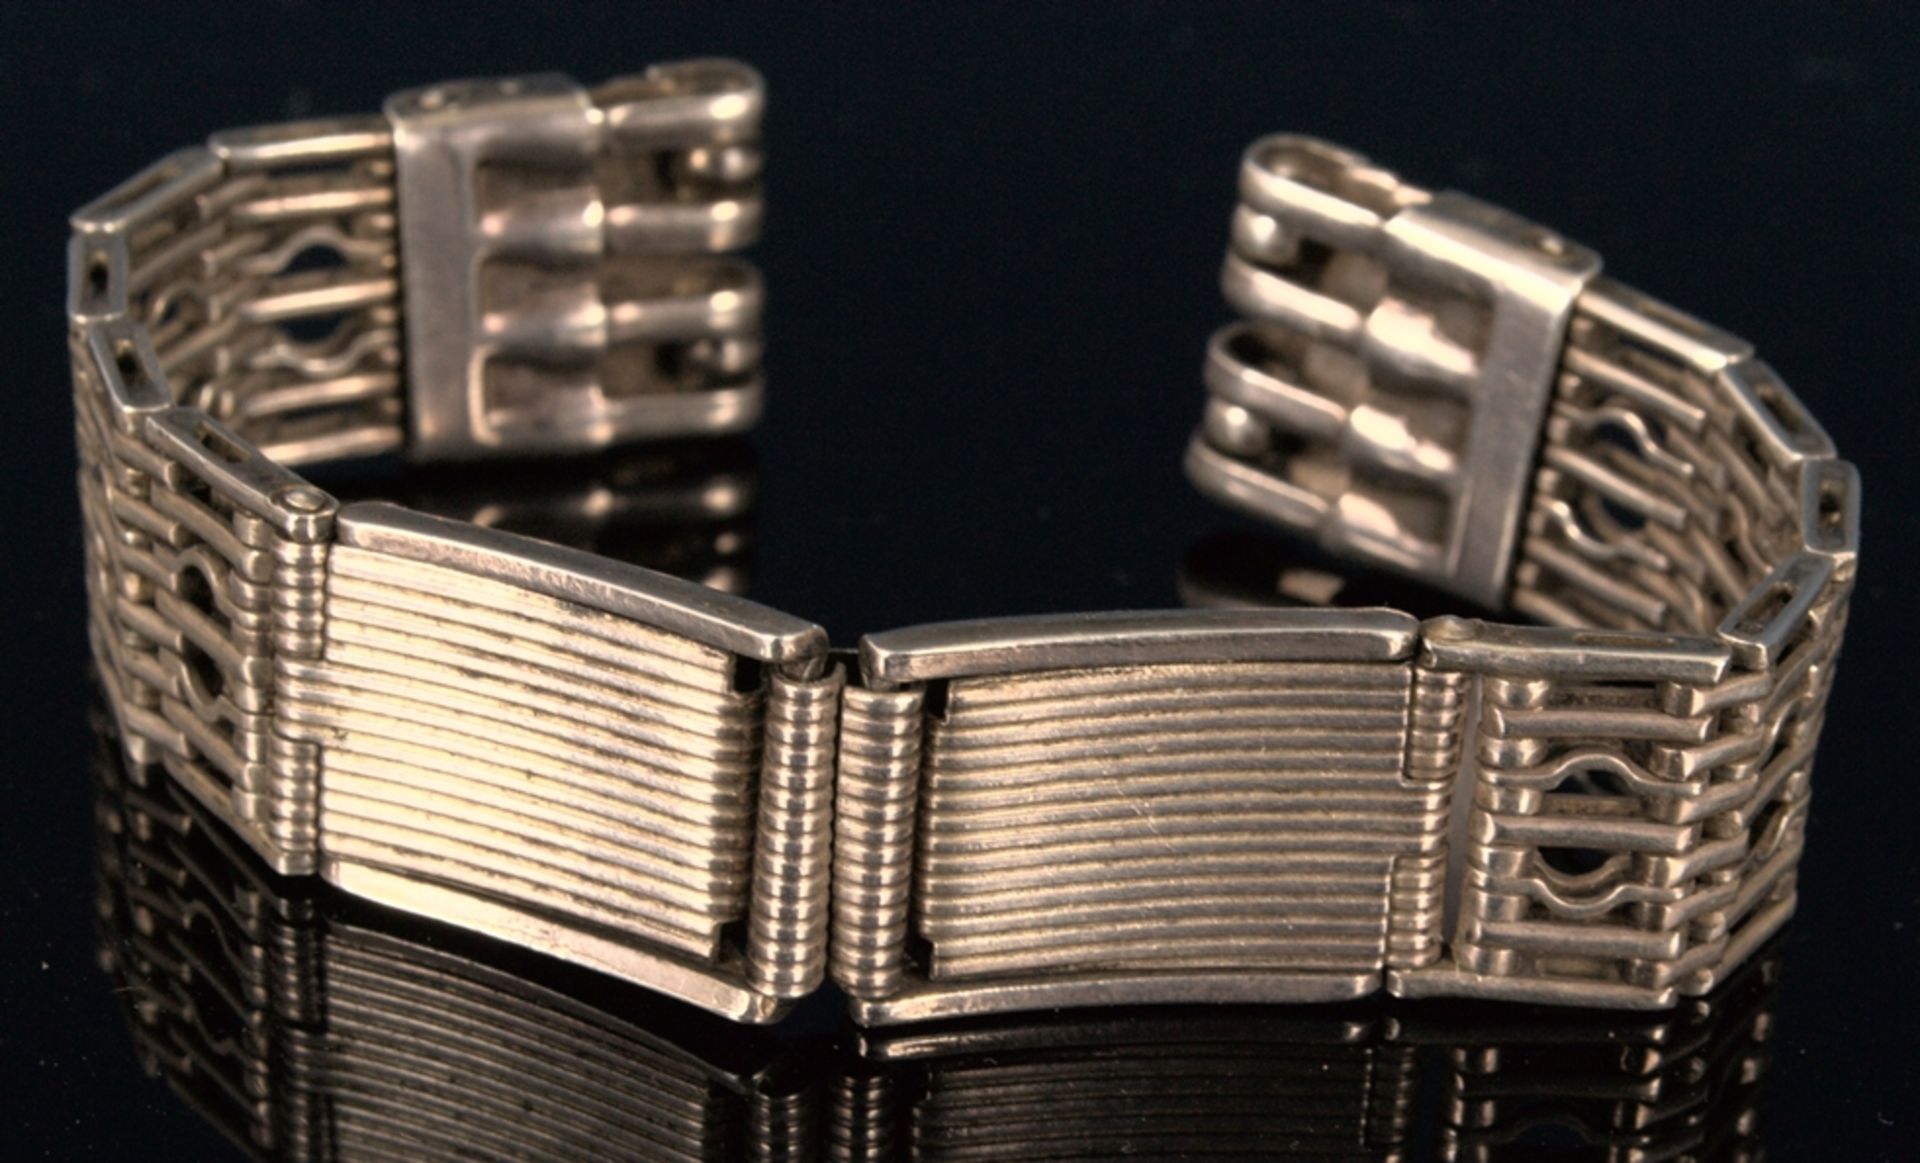 Russisches Armband für eine Herrenarmbanduhr, mehrgliedriges, teilweise durchbrochen gearbeitetes